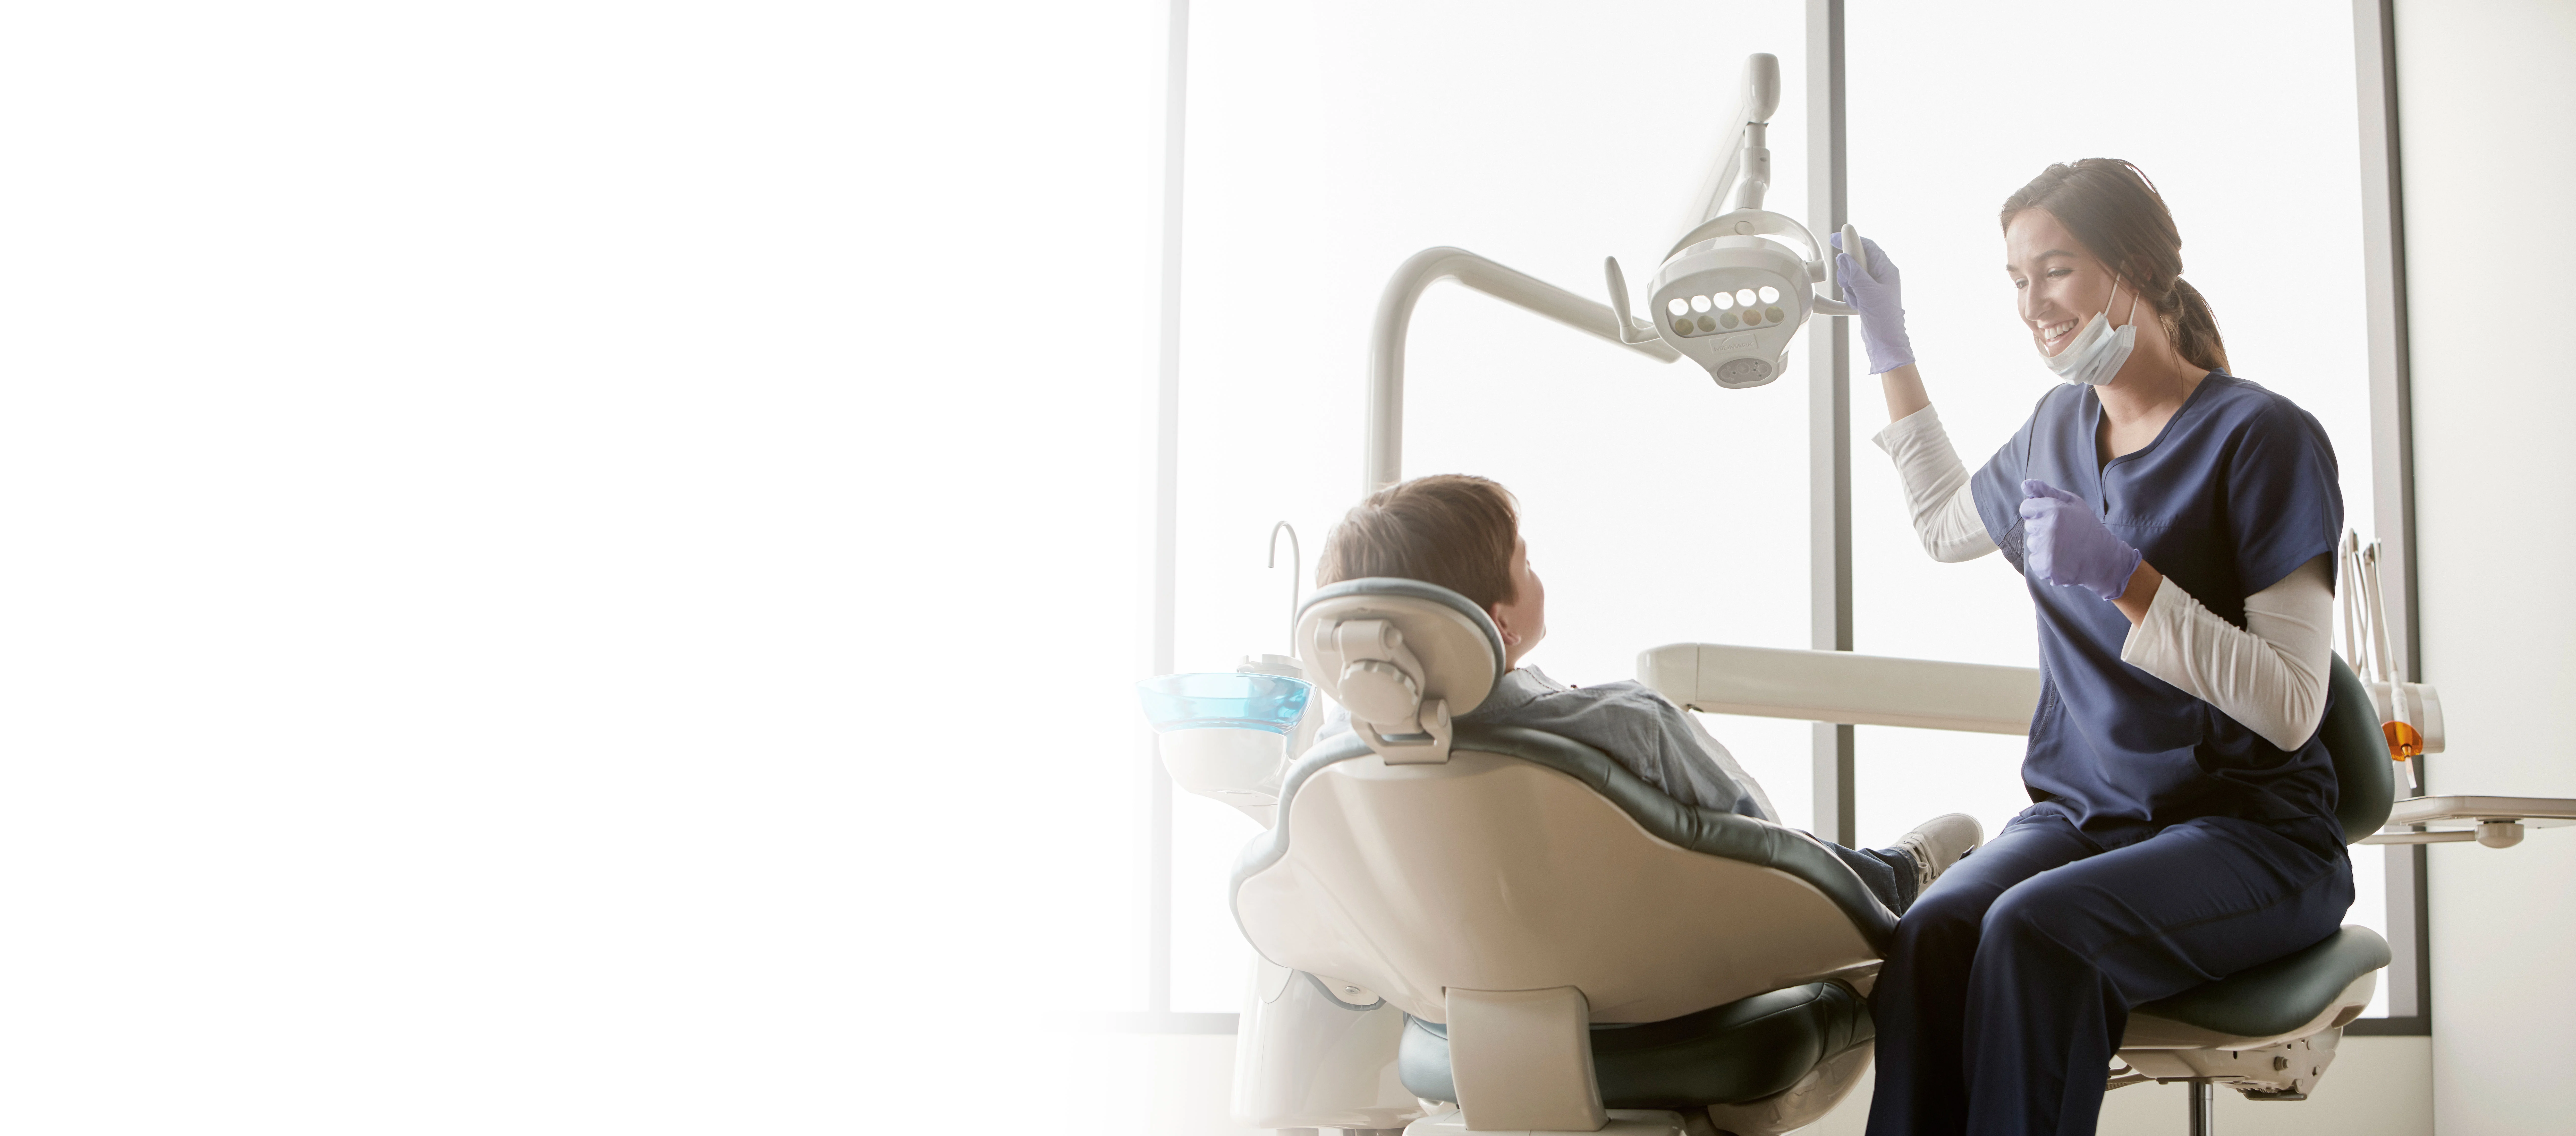 dentist adjusting dental light on patient